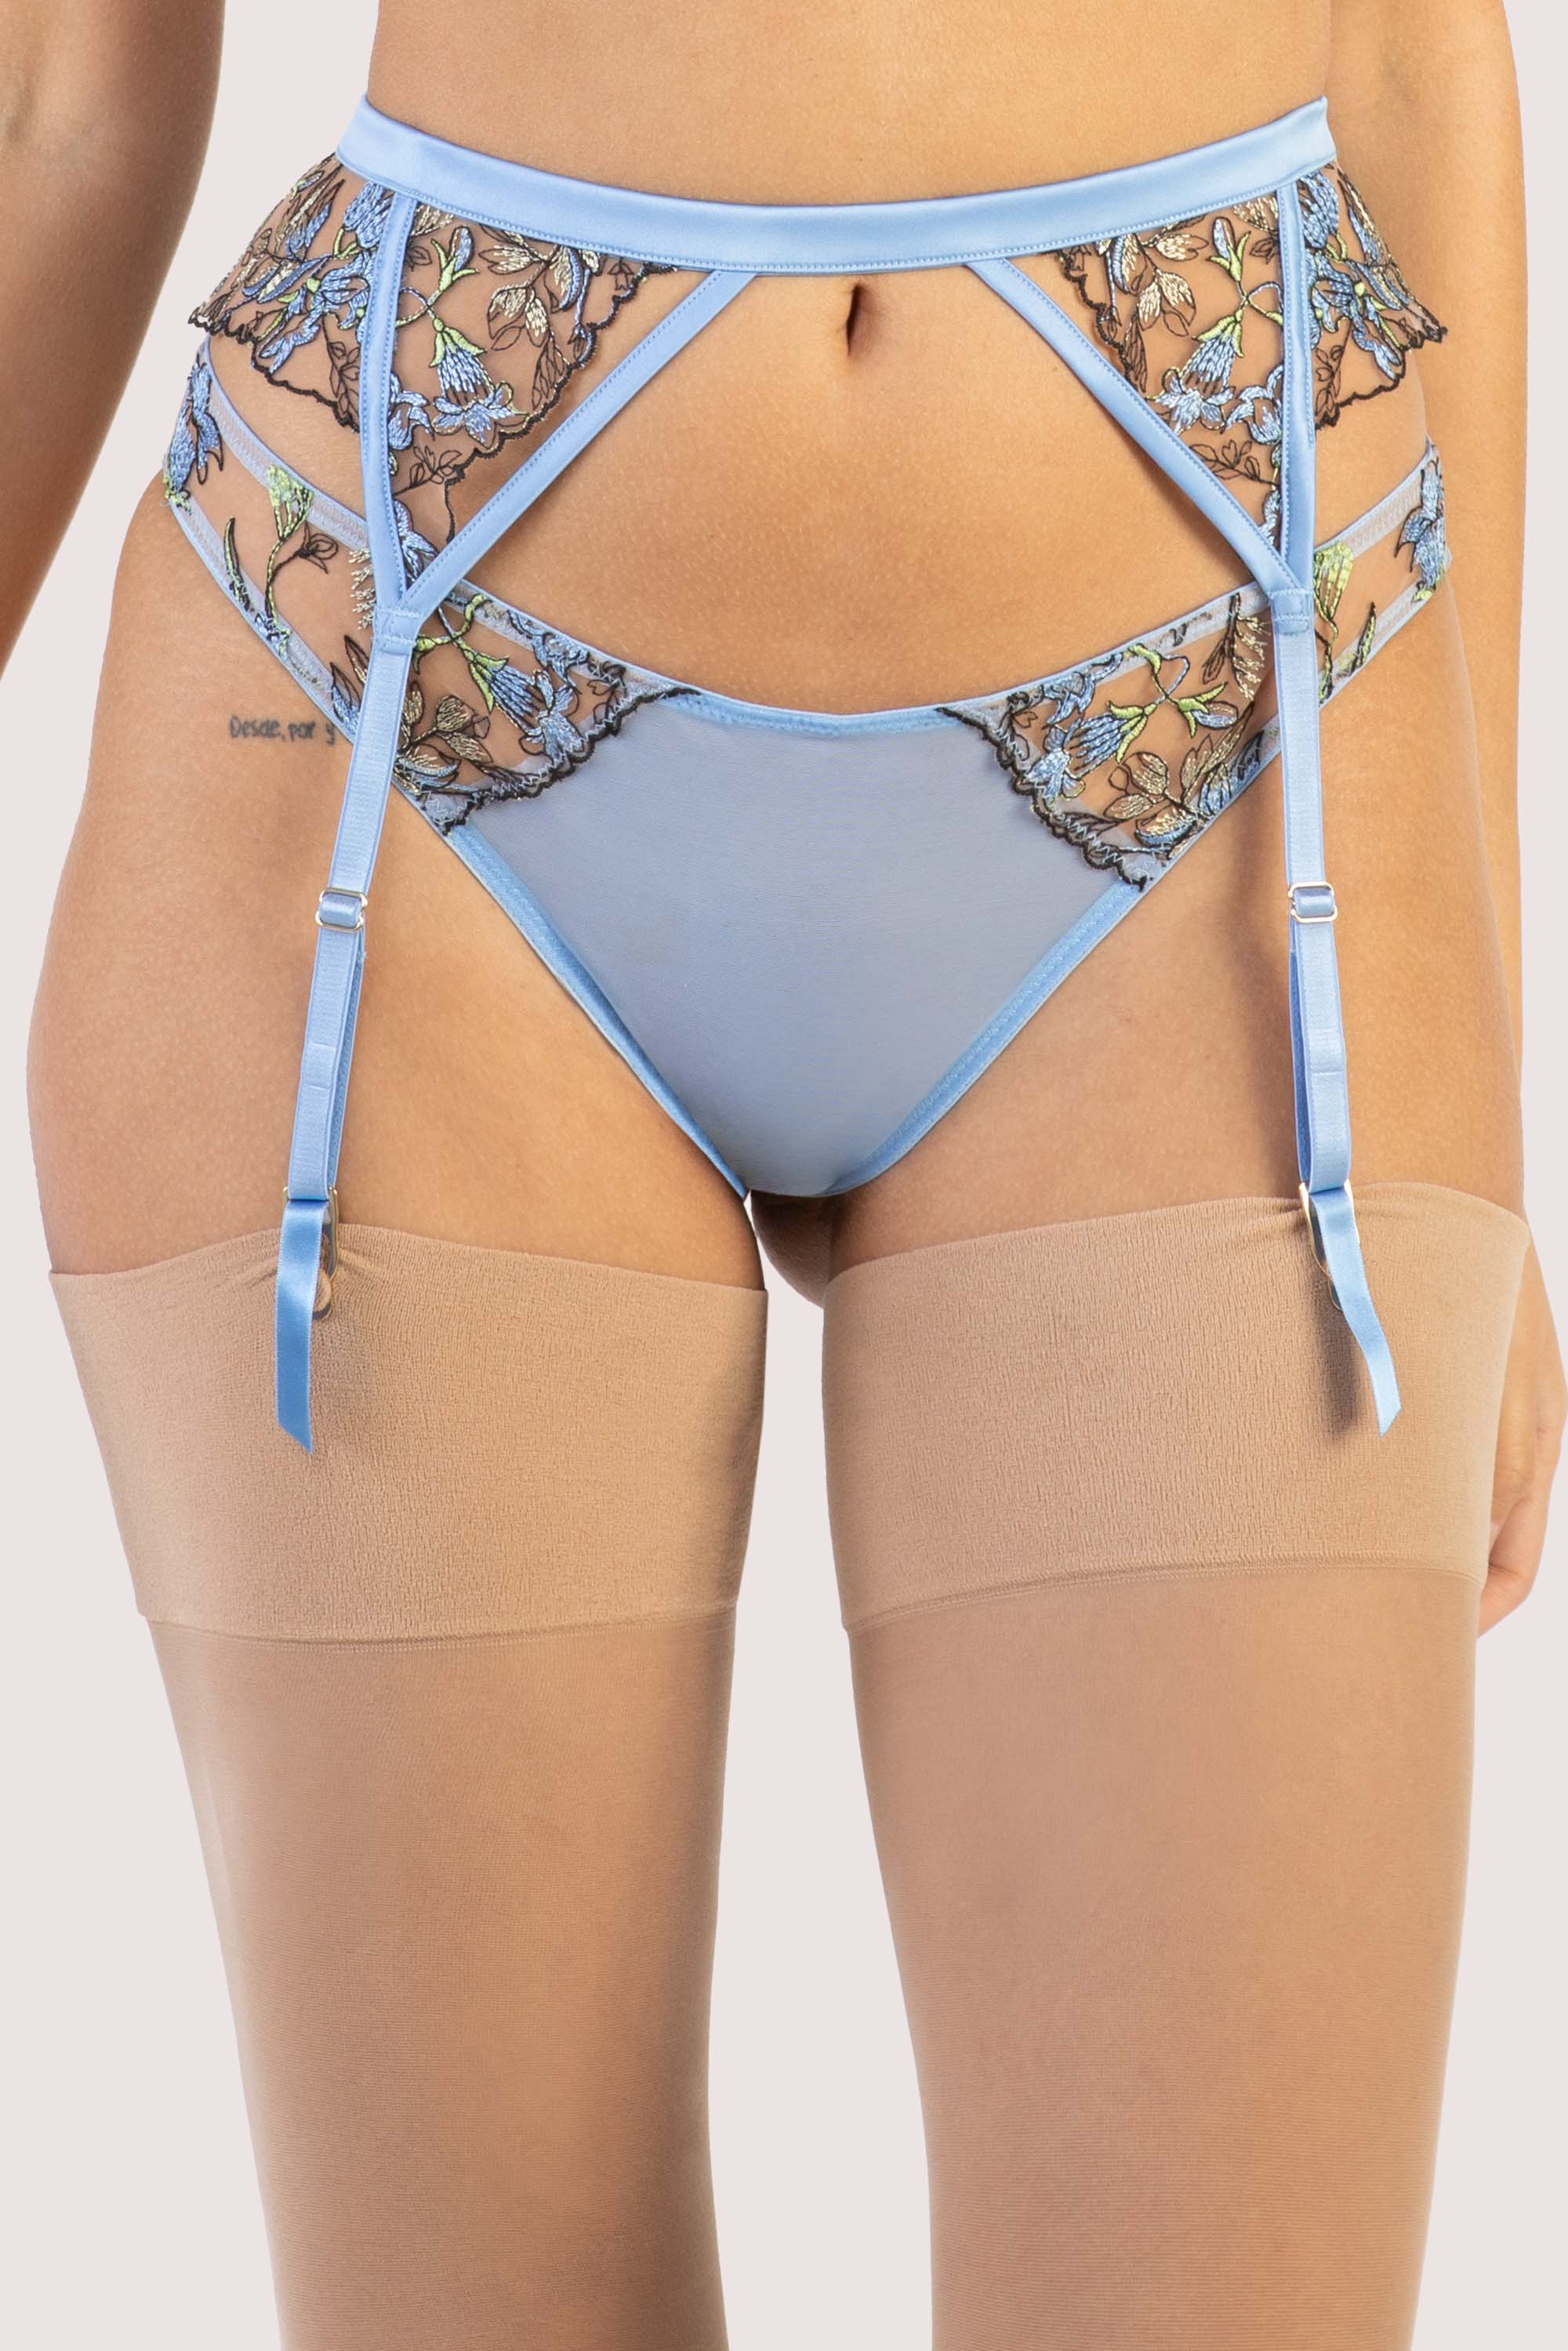 adjustable blue floral suspender belt